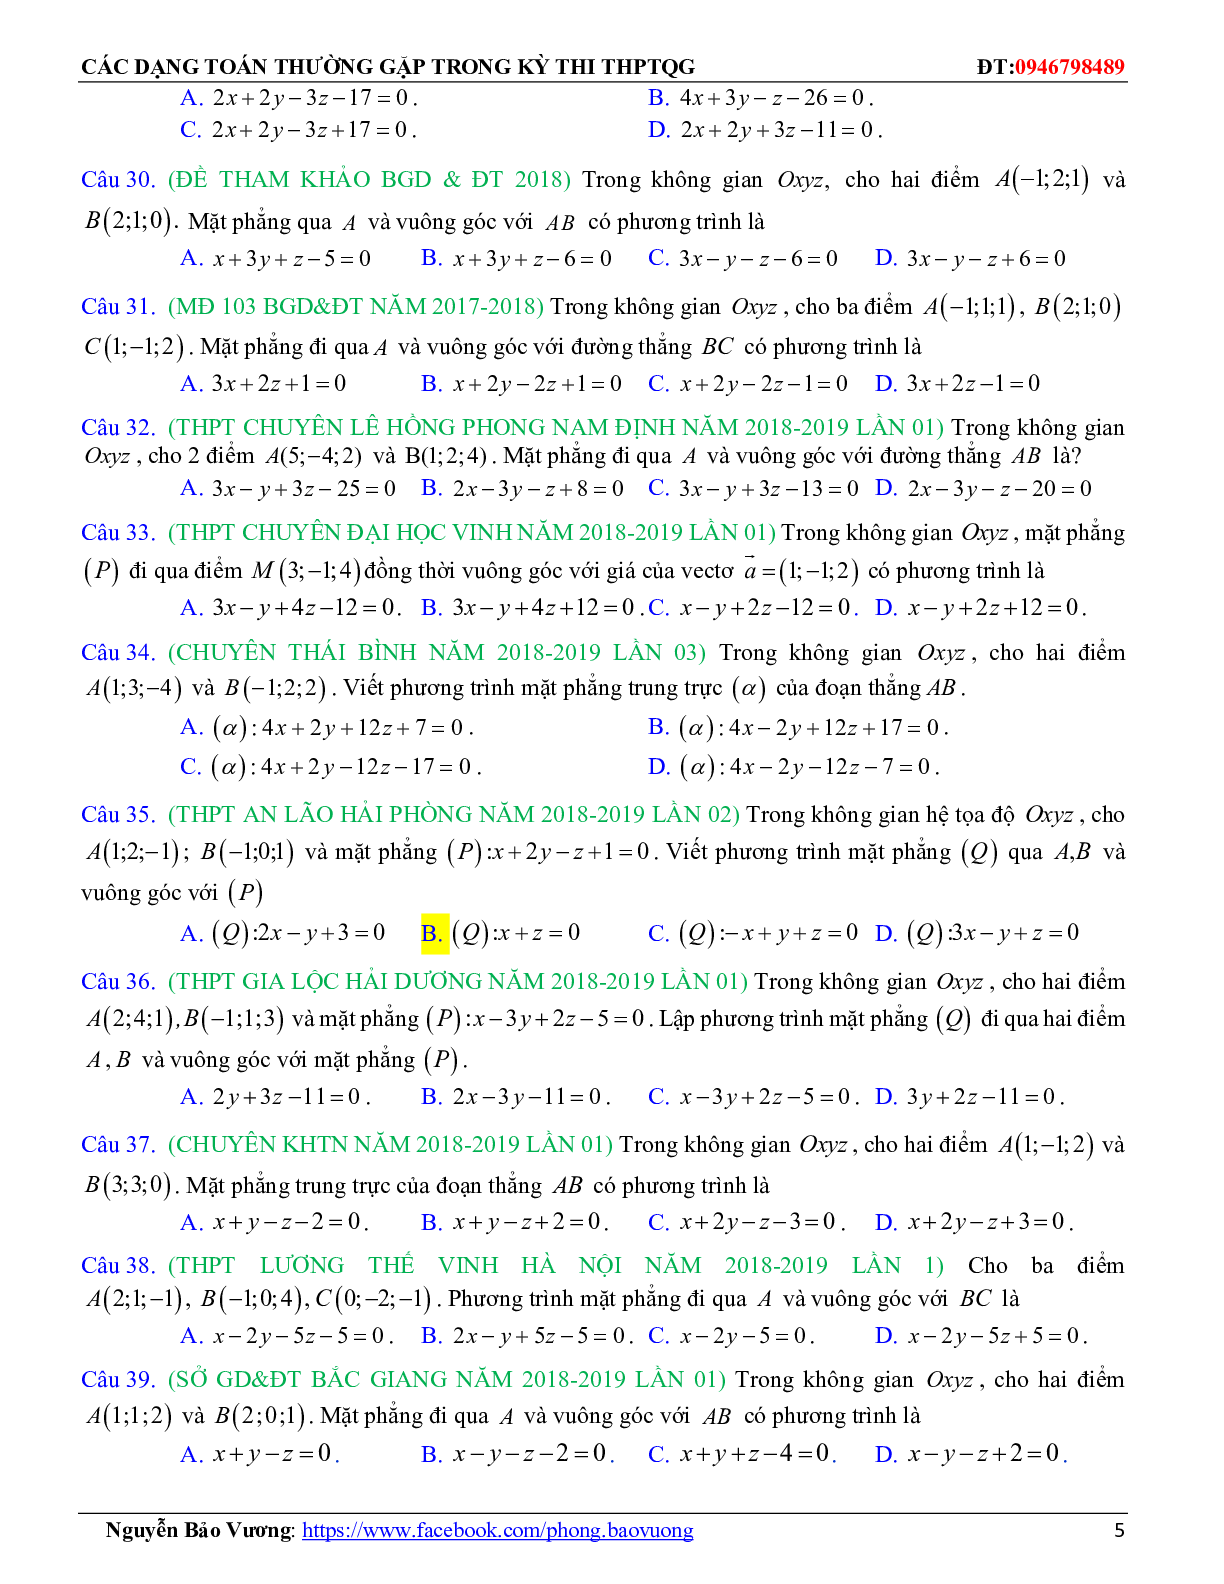 196 câu trắc nghiệm Phương trình đường thẳng có đáp án 2023 (trang 5)